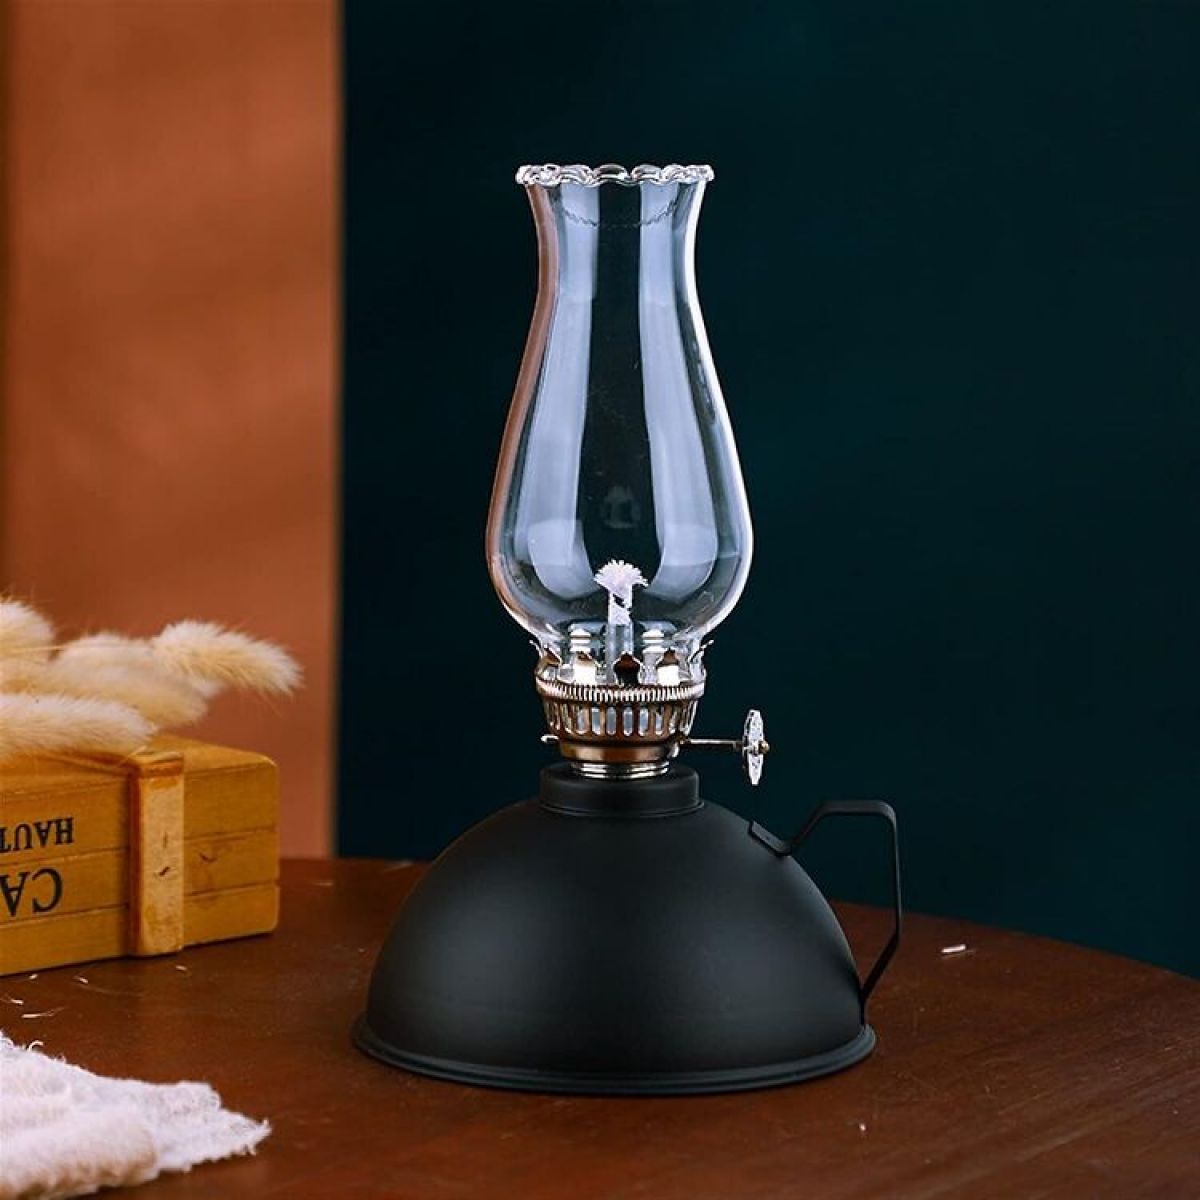 Керосиновая лампа Amanigo, 18.5 см, черная